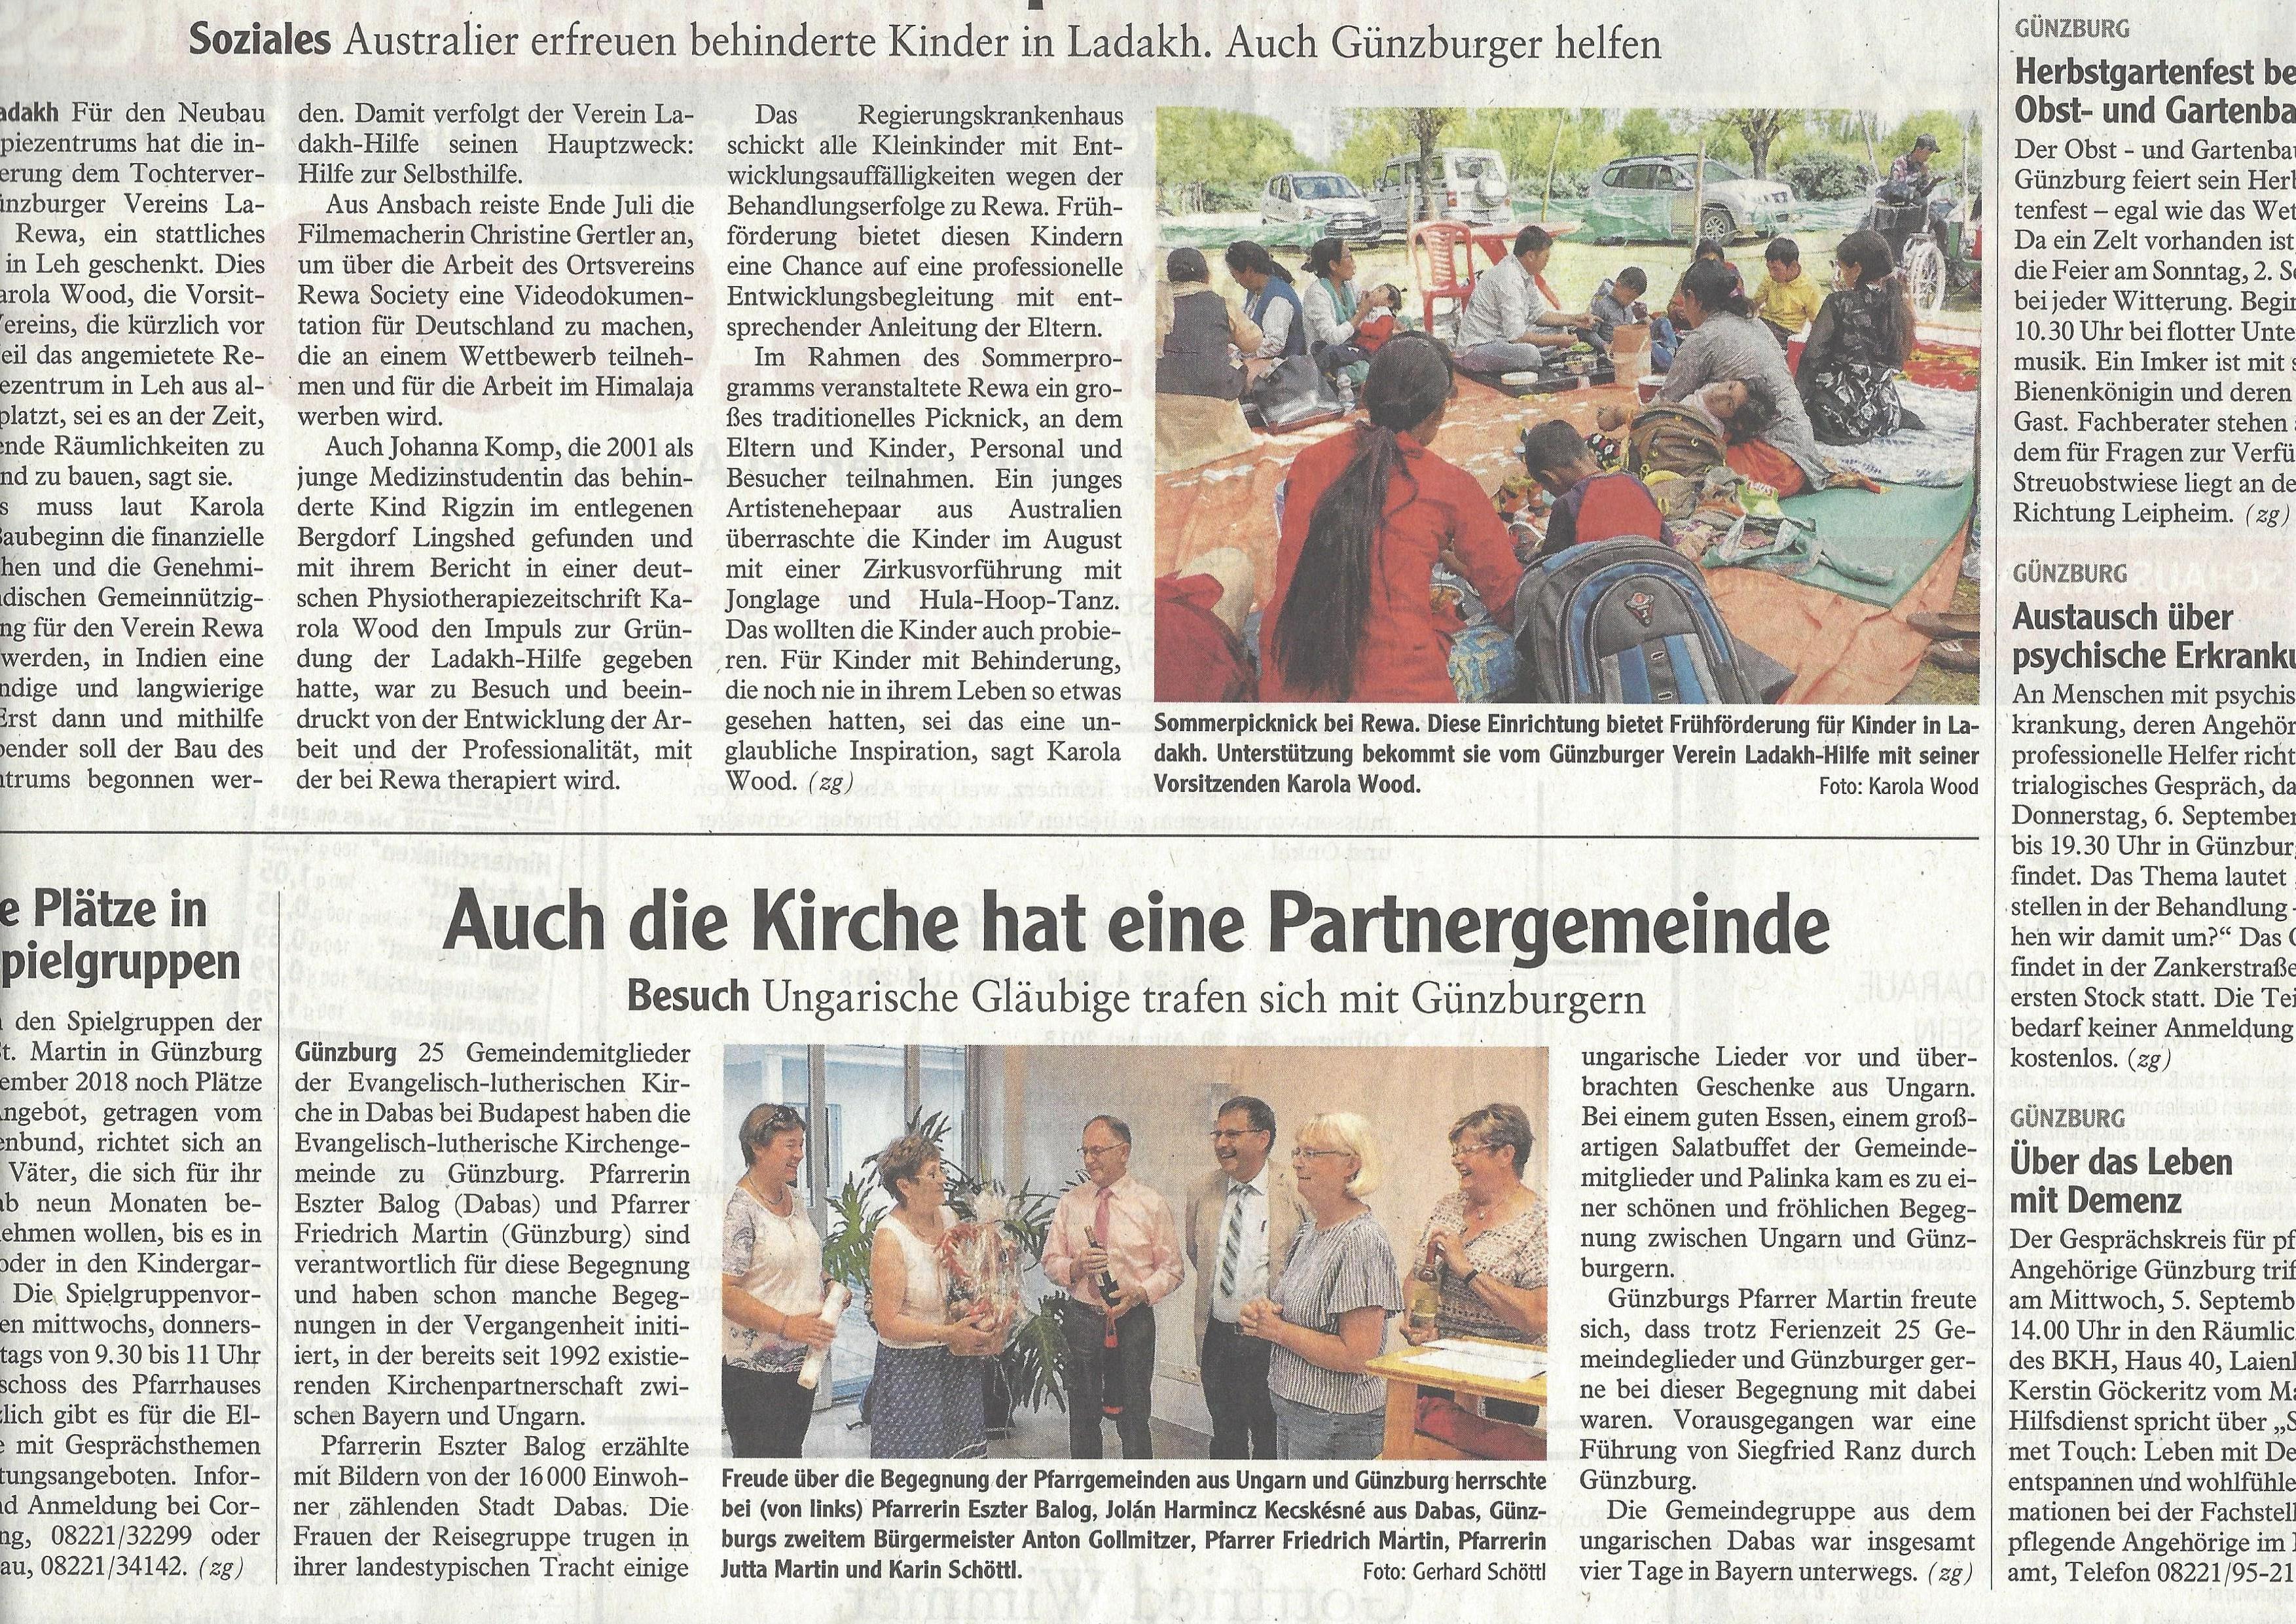 Németországi kirándulásunkról egy újságcikk